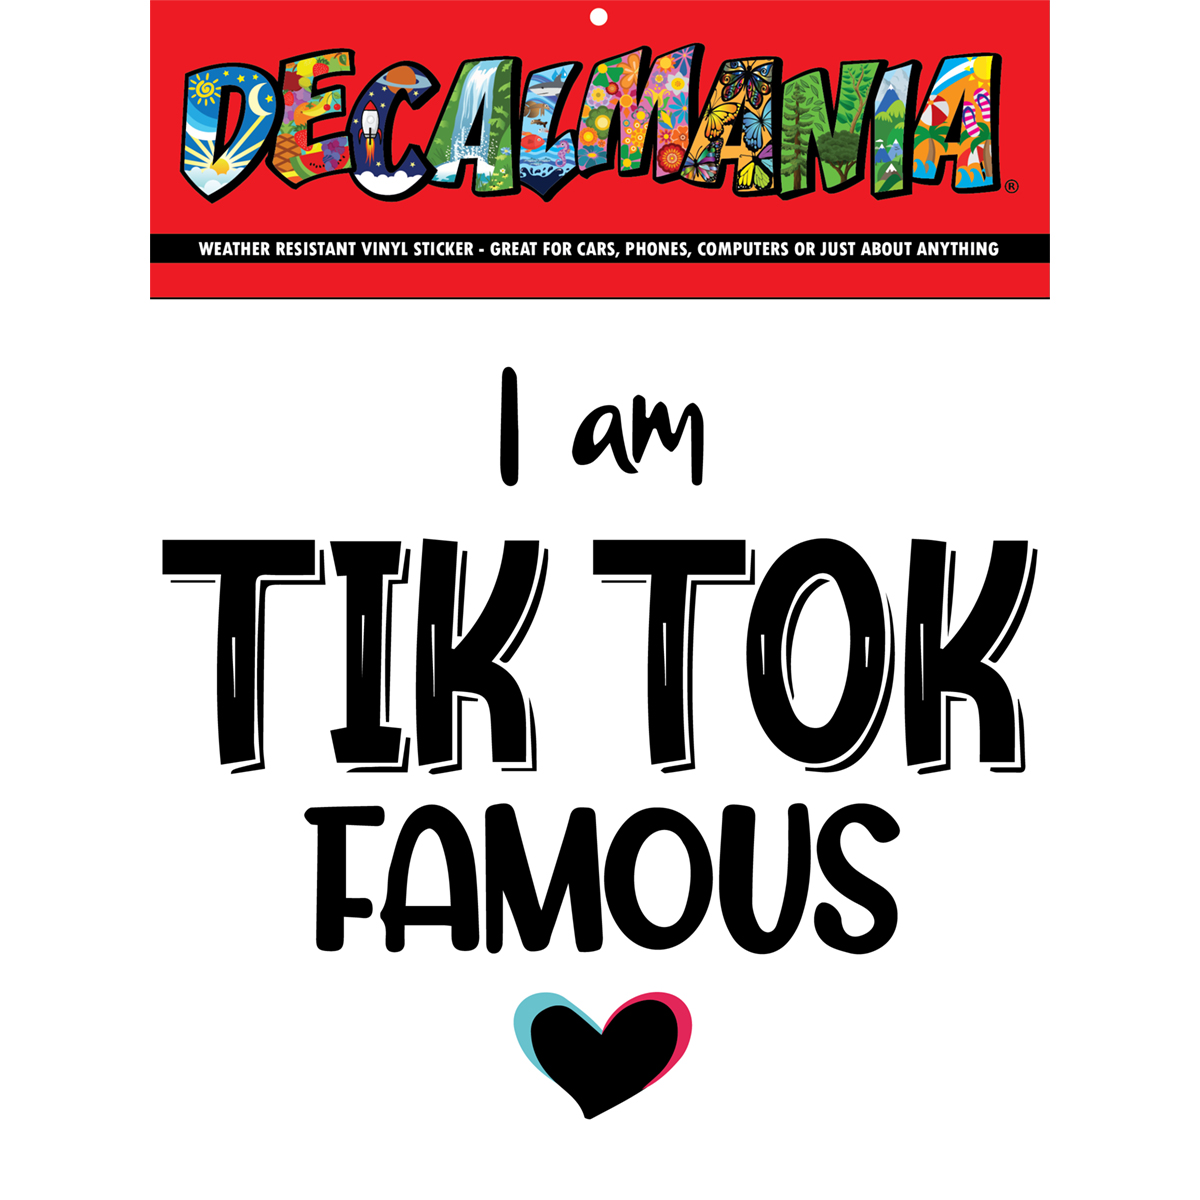 DecalMania - Tik Tok Famous 1PK 6in